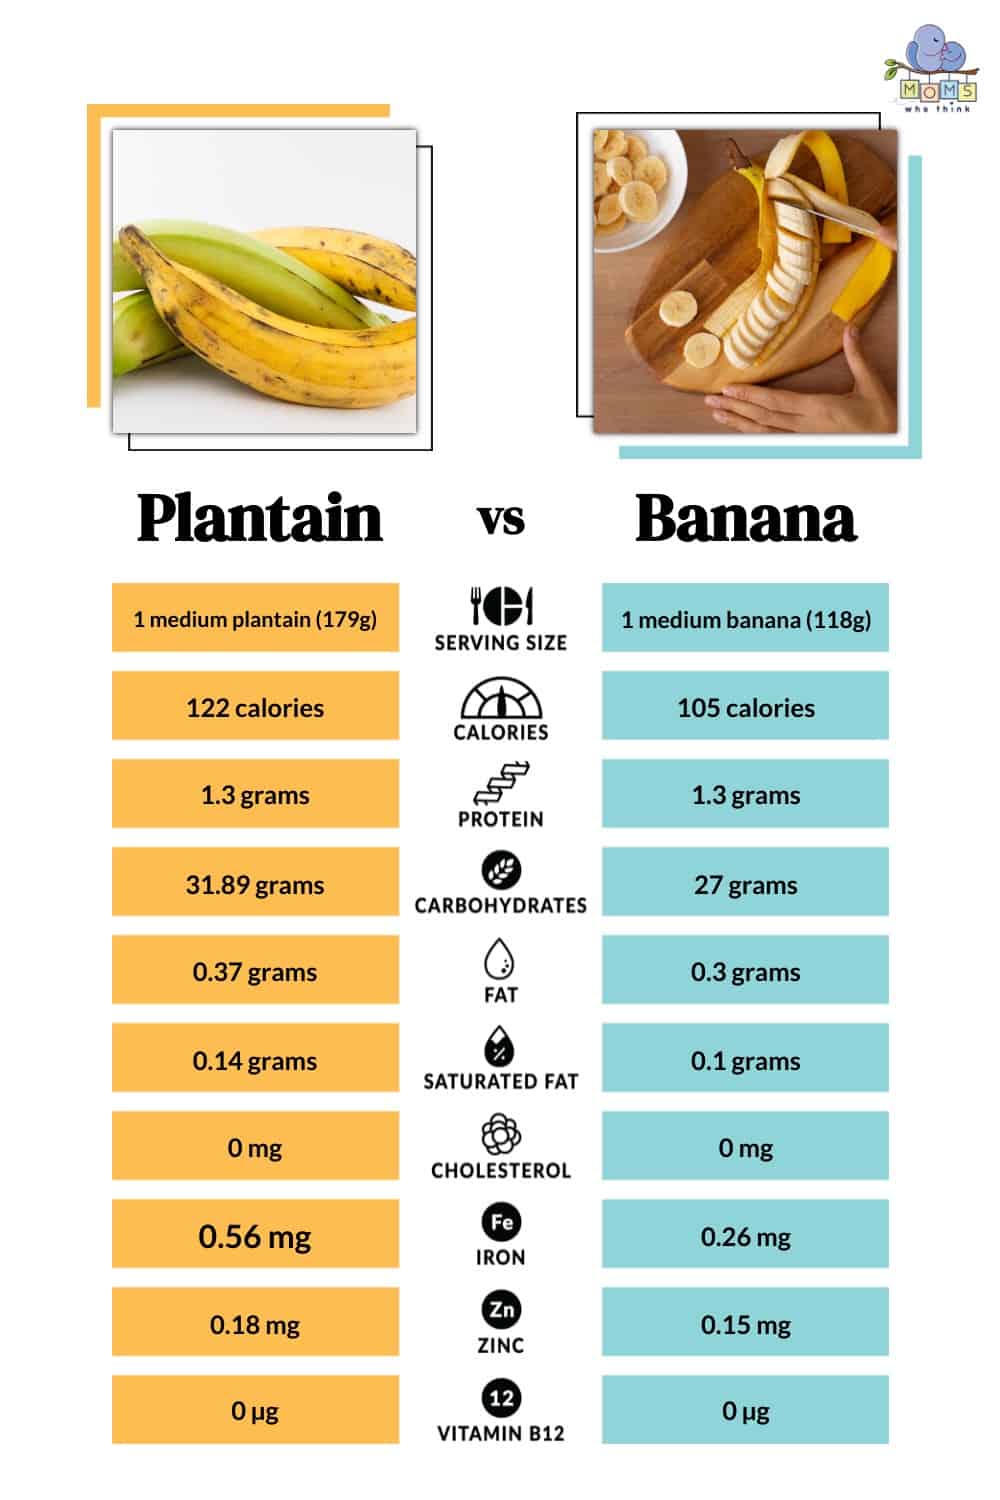 Plantain vs Banana Nutritional Facts